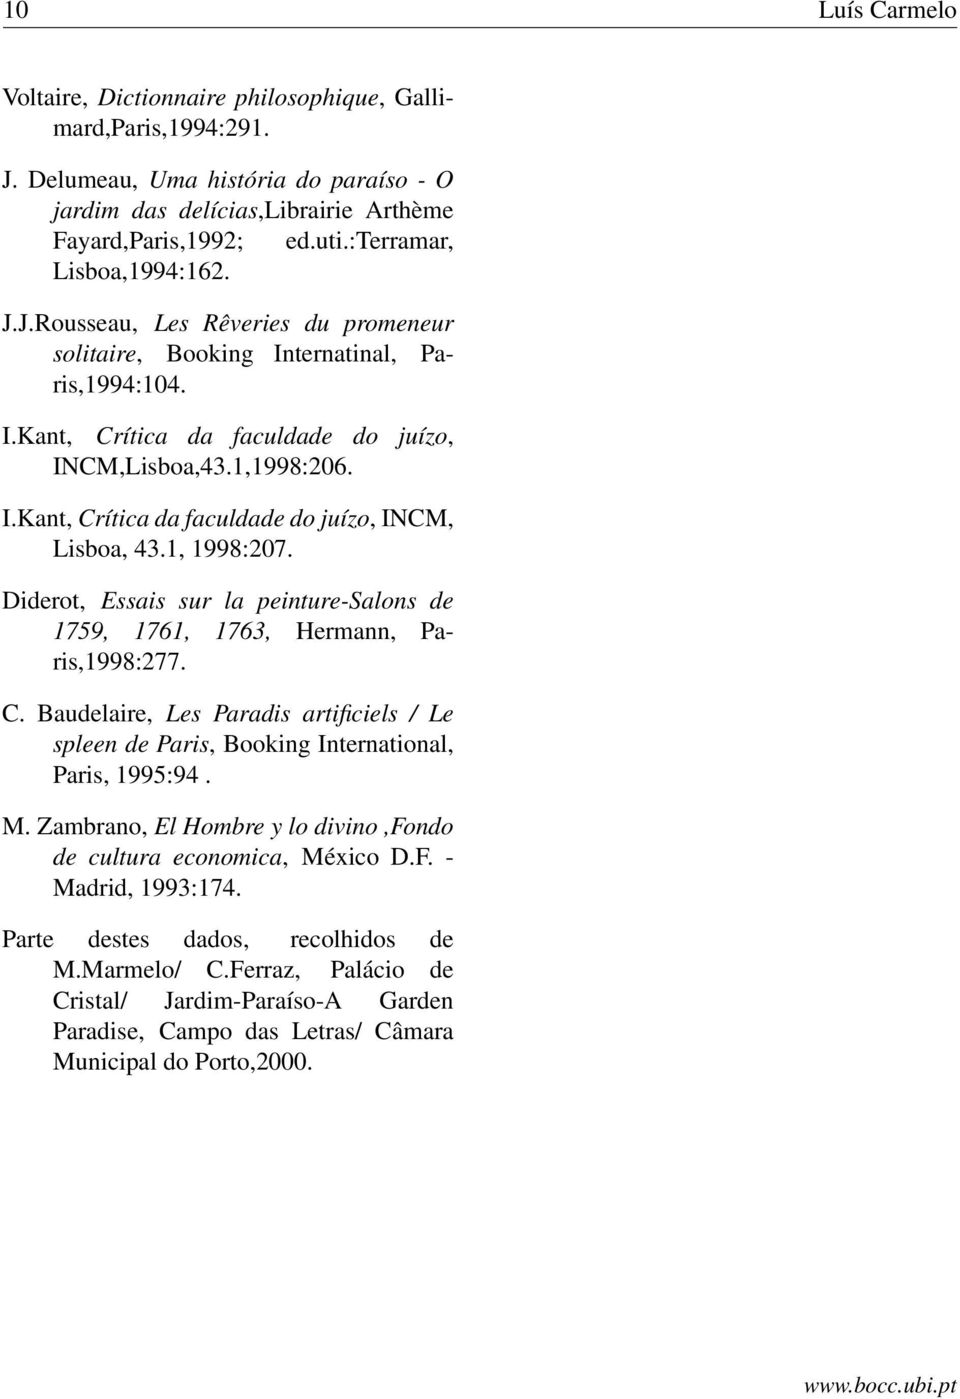 1, 1998:207. Diderot, Essais sur la peinture-salons de 1759, 1761, 1763, Hermann, Paris,1998:277. C. Baudelaire, Les Paradis artificiels / Le spleen de Paris, Booking International, Paris, 1995:94. M.